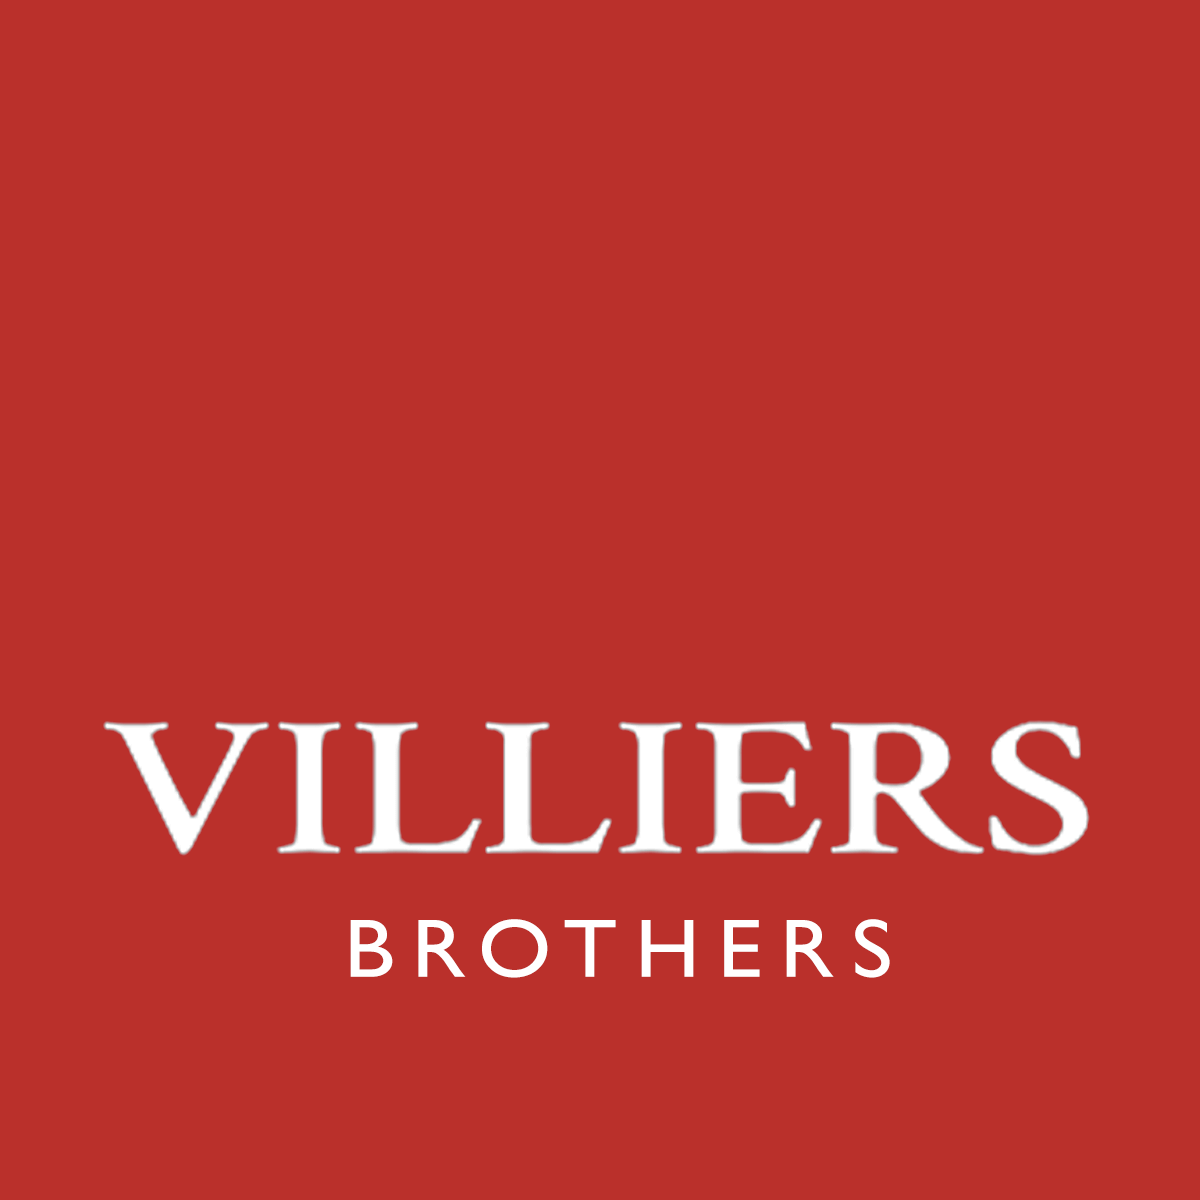 Villiers Brothers Ltd